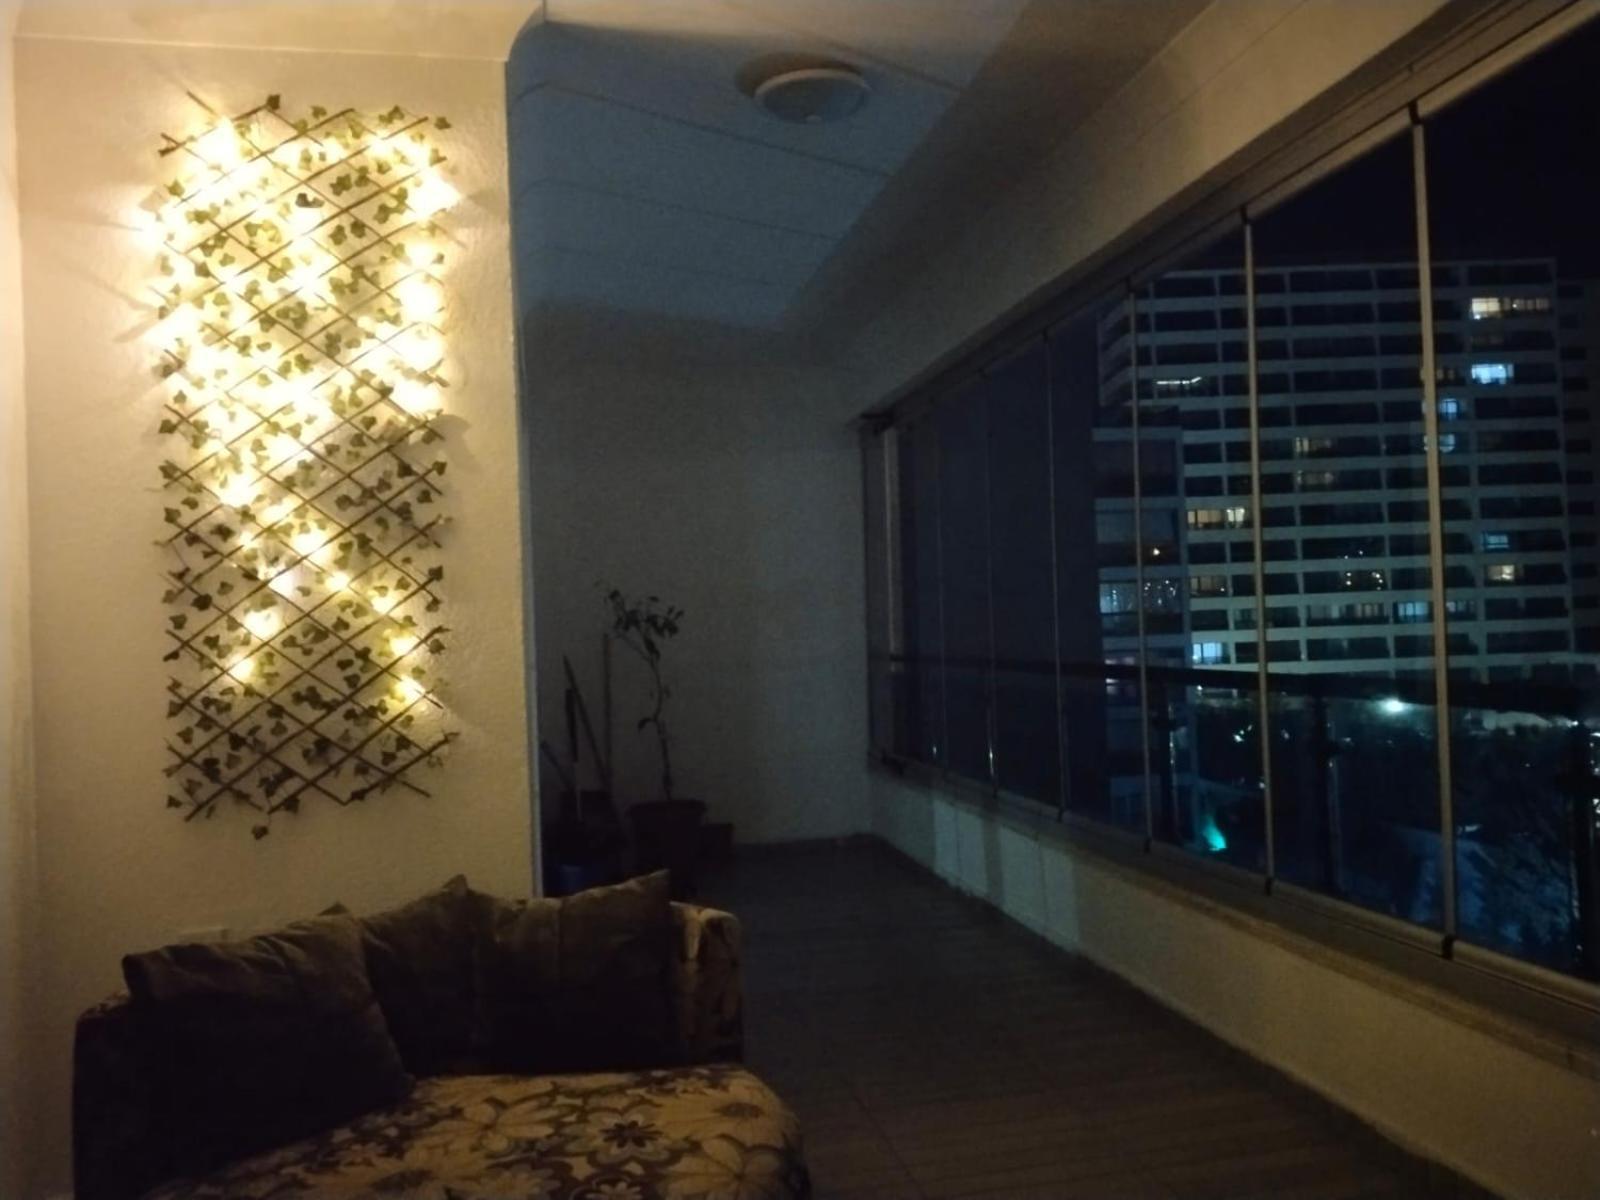 EtimesutEryaman, Wide Luxury Rezidance公寓式酒店 外观 照片